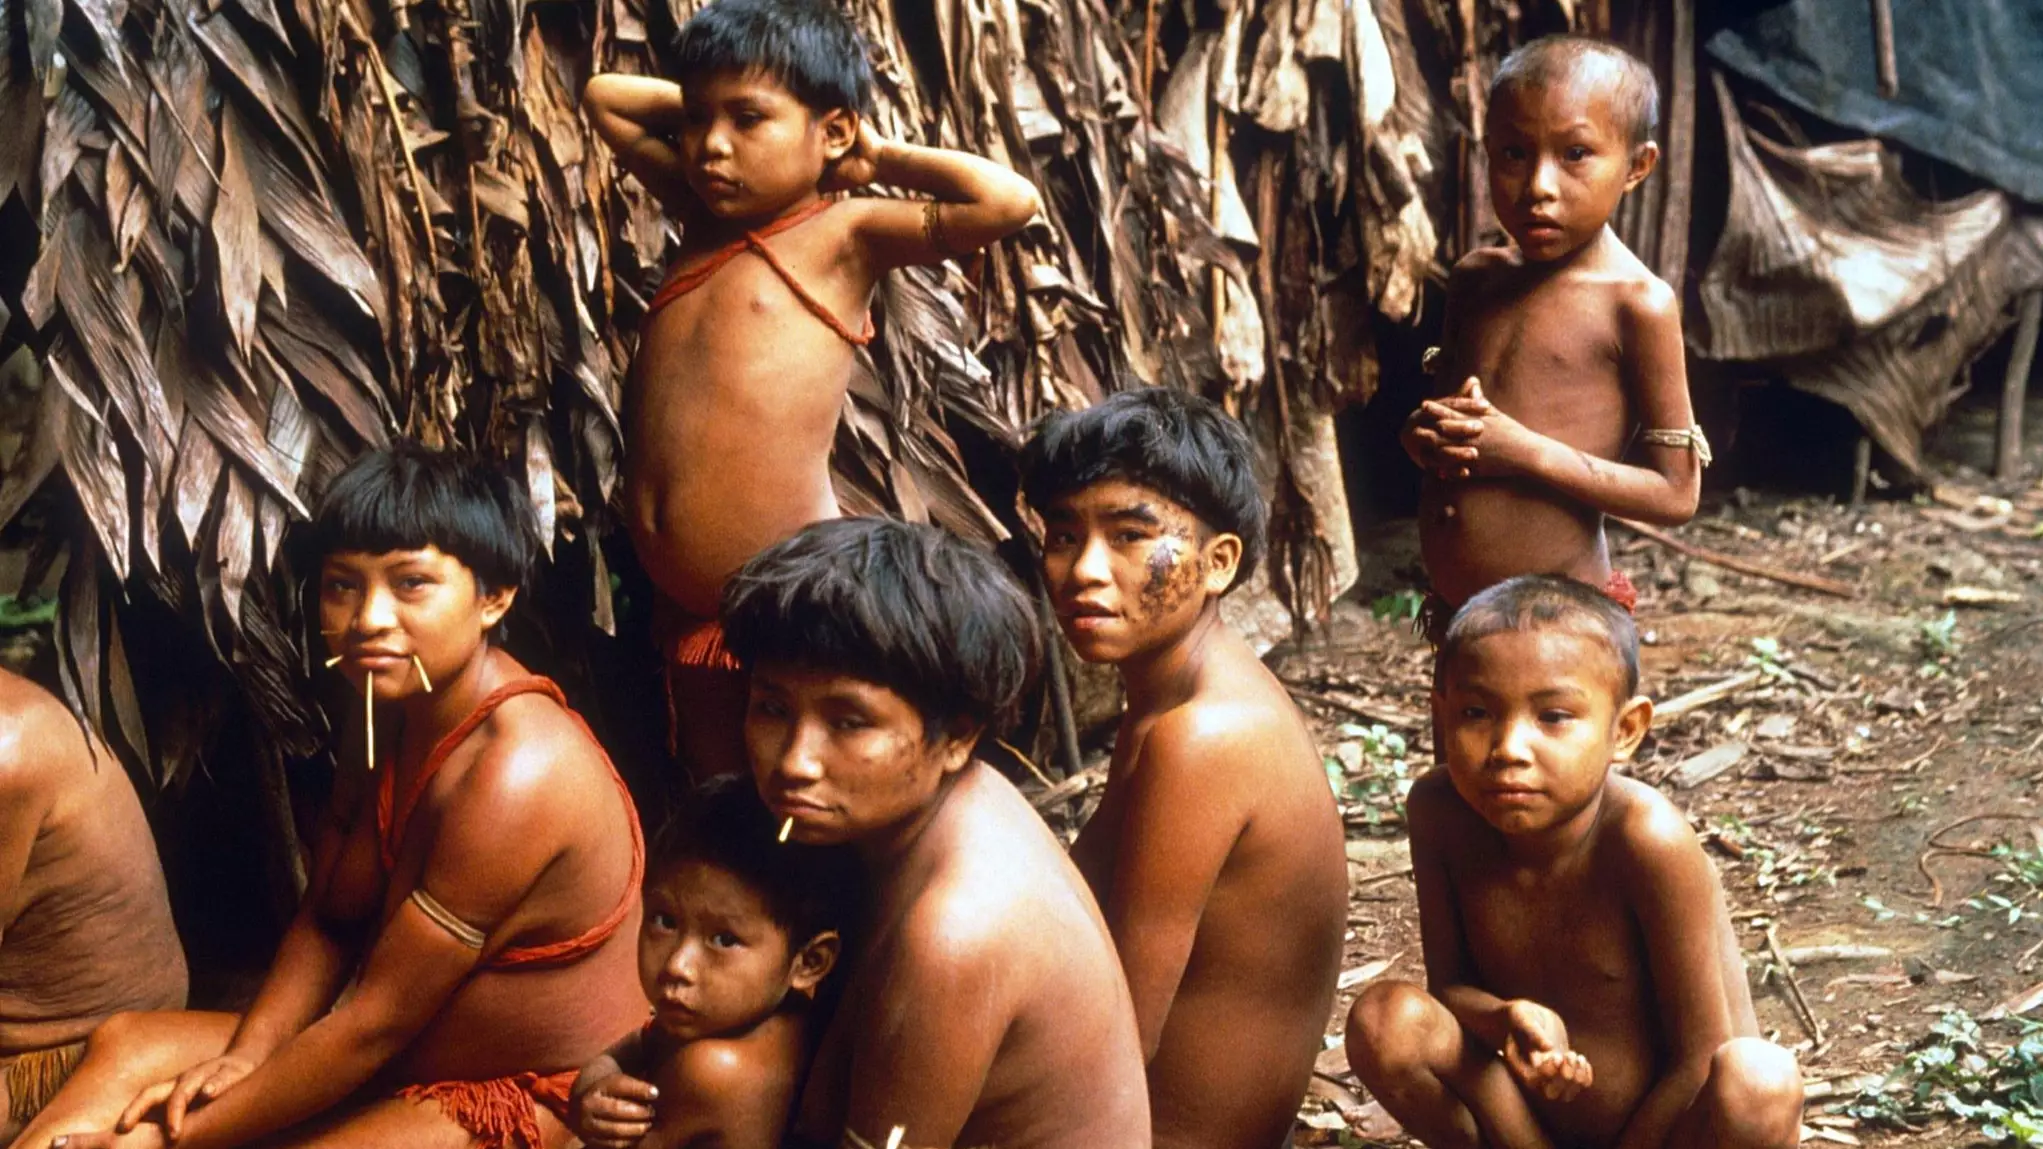 Remote Yanomami Tribe In Brazil Records First Case Of Coronavirus